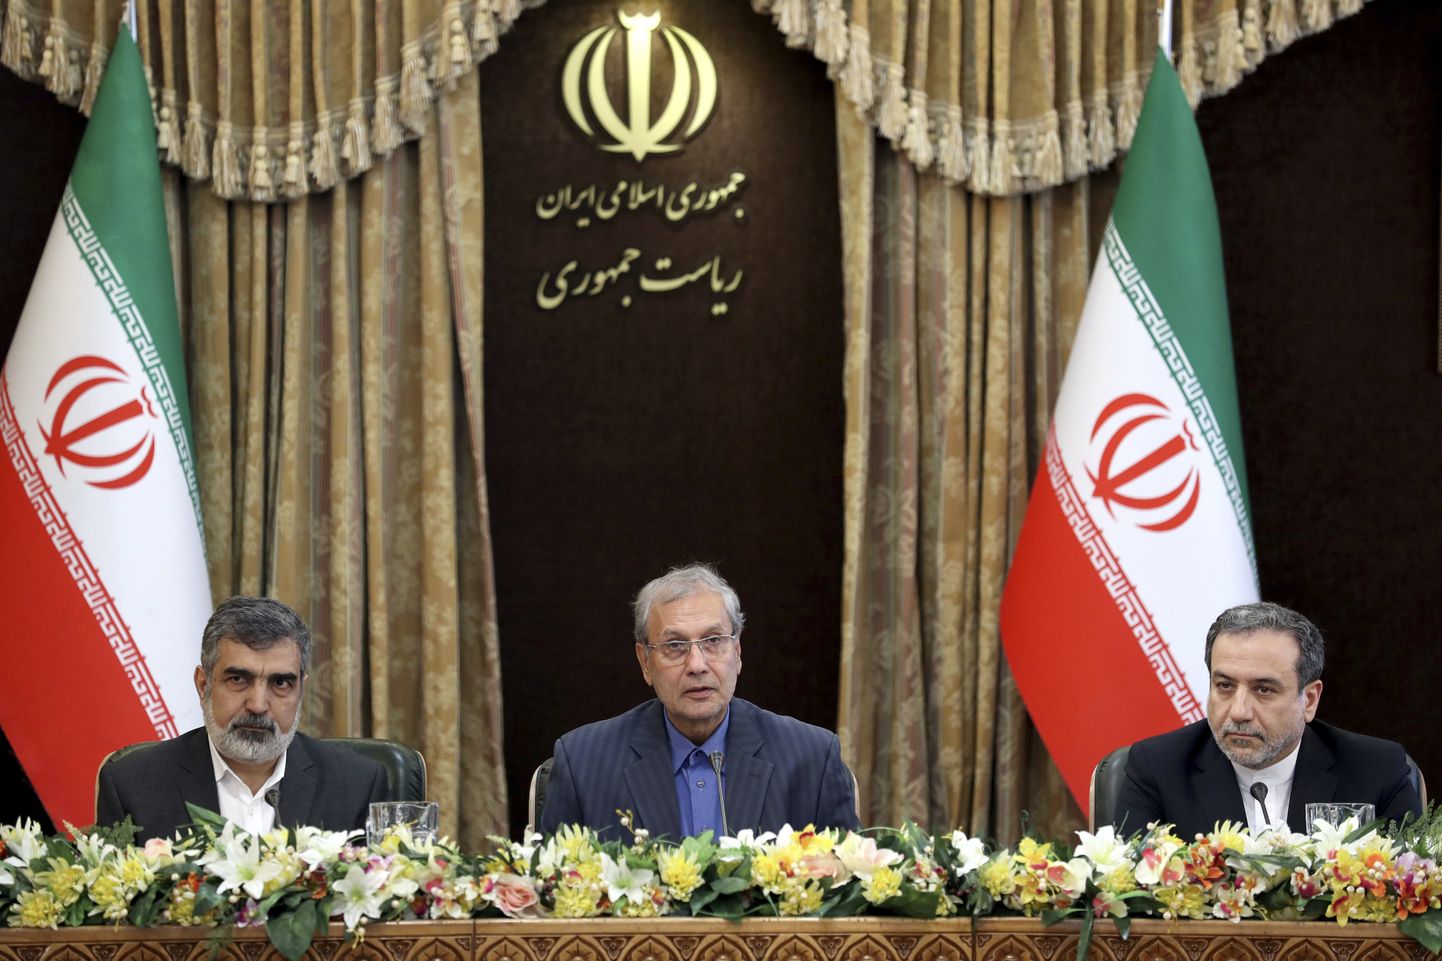 Iraani ametnikud täna teatamas ähvardusest loobuda teistegi tuumakohustuste täitmisest. Pildil on Iraani tuumaagentuuri pressiesindaja Behrouz Kamalvandi (vasakul), valitsuse pressiesindaja Ali Rabiei (keskel) ja asevälisminister Abbas Araghchi (paremal).